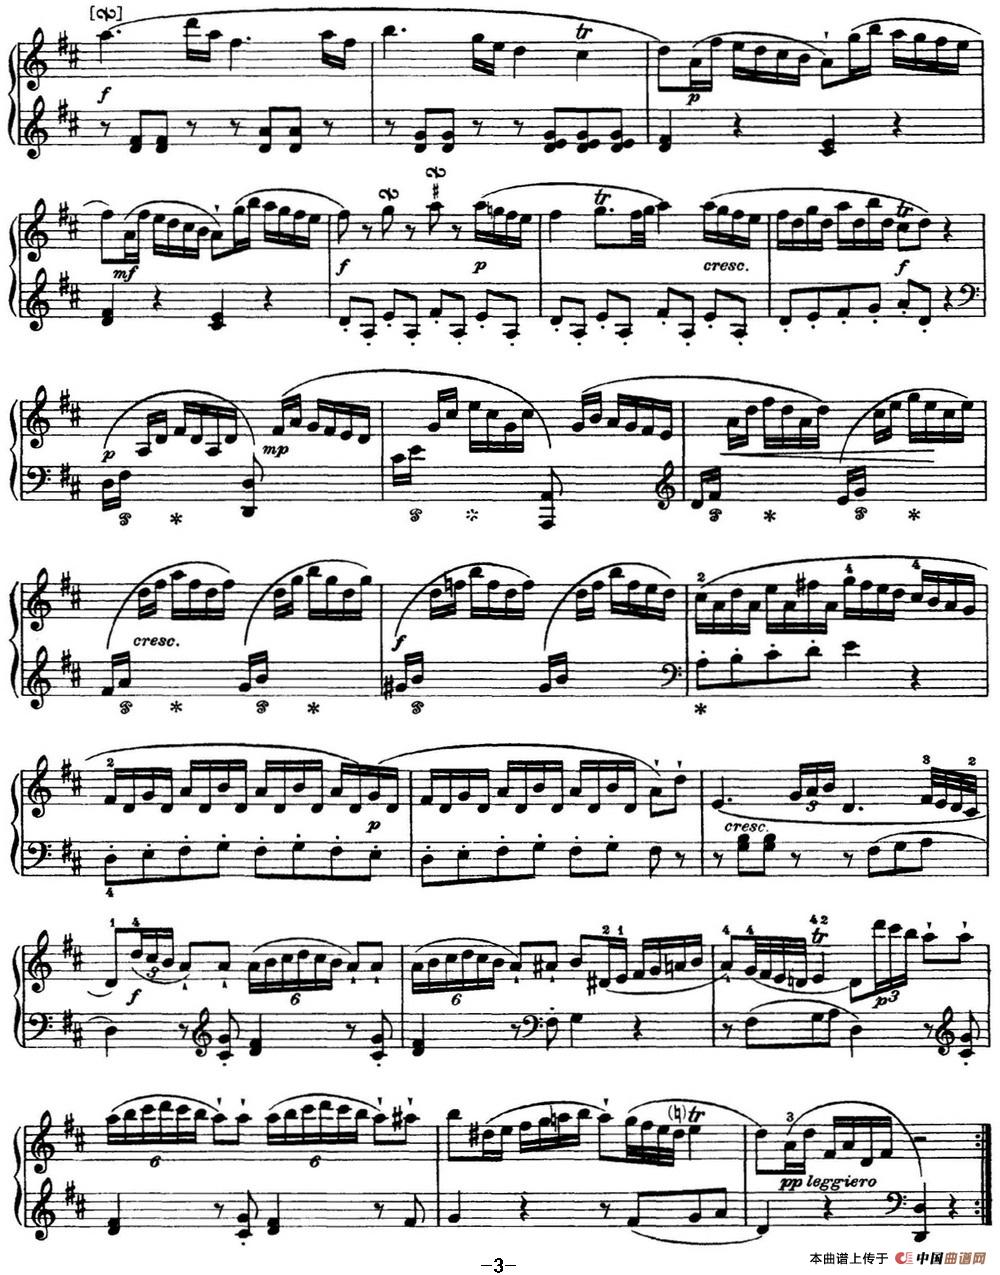 《海顿 钢琴奏鸣曲 Hob XVI 4 Divertimento D major》钢琴曲谱图分享